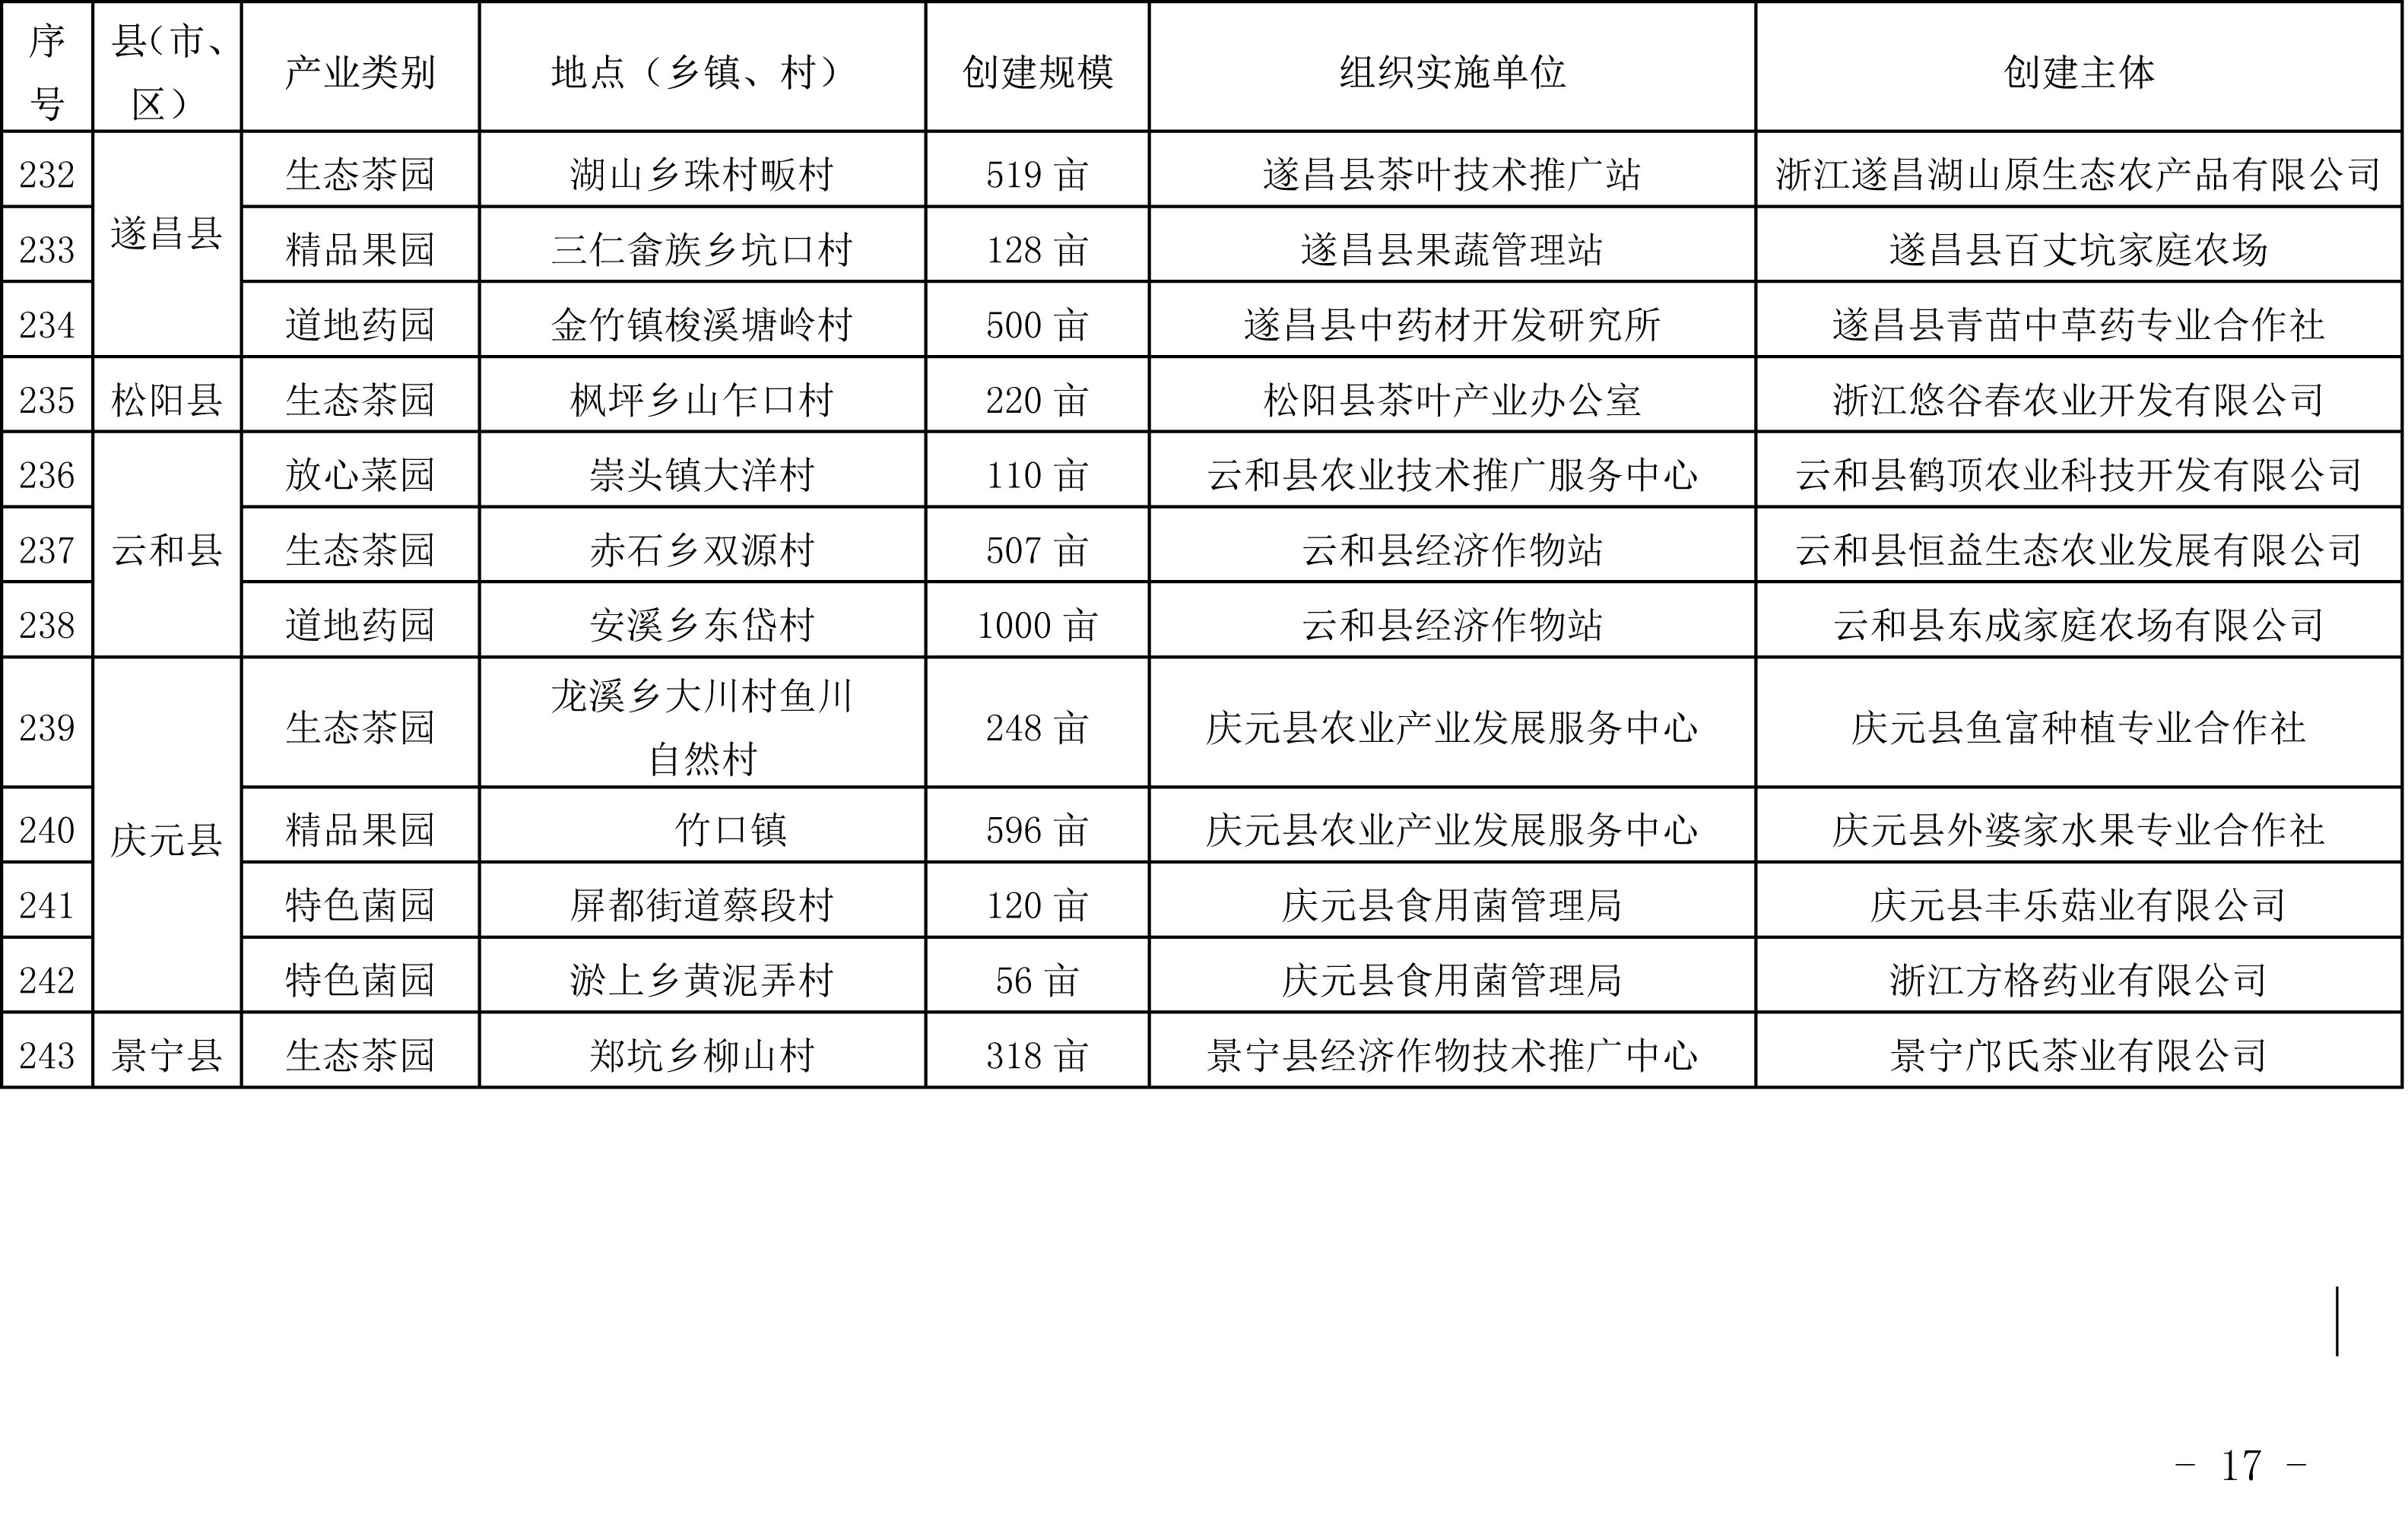 浙江省农业农村厅关于公布2019年度种植业“五园”创建省级示范基地名单的通知(图16)